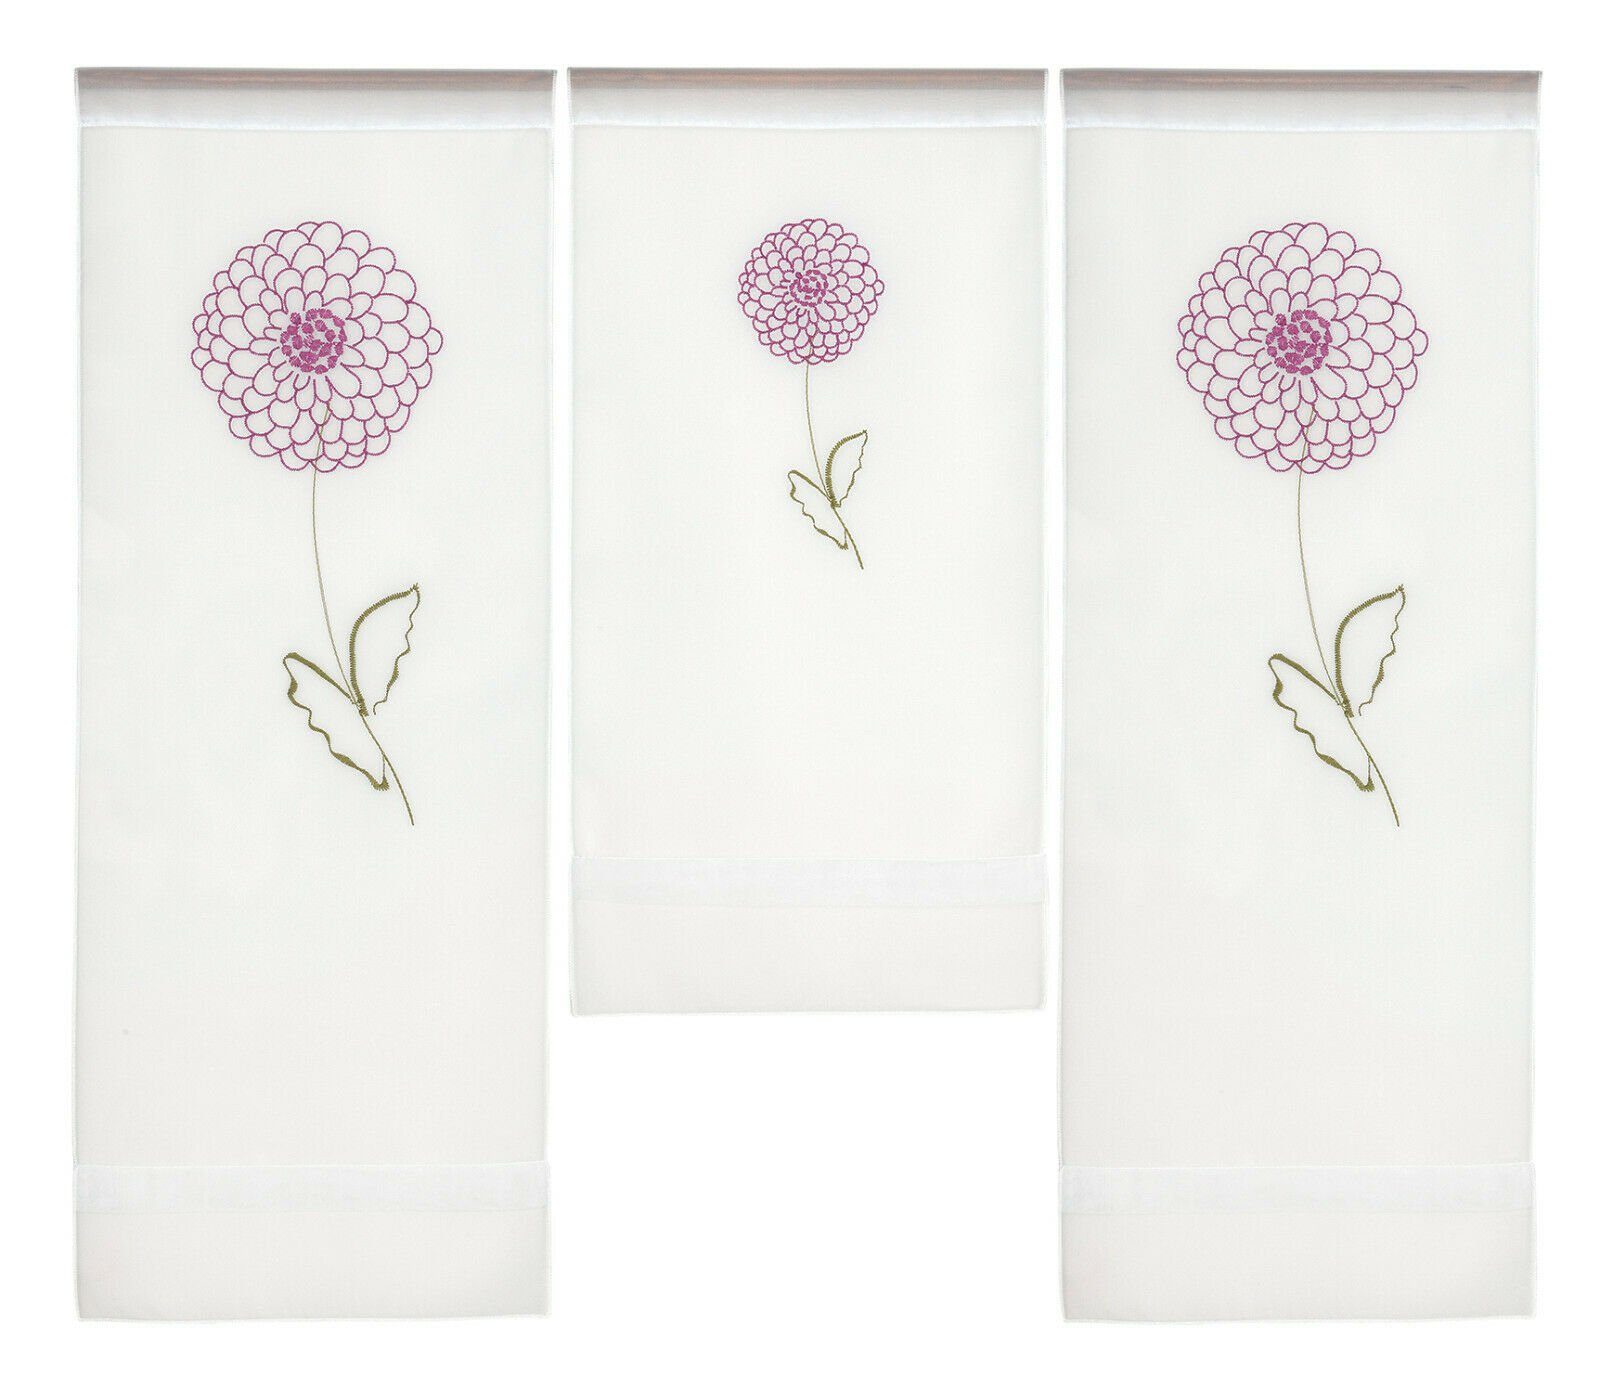 Scheibengardine Design Mini (3 bestickt 3-teilig, 4043, Stangendurchzug Flächenvorhang Set, Clever-Kauf-24, St), transparent Voile, mit Blumen